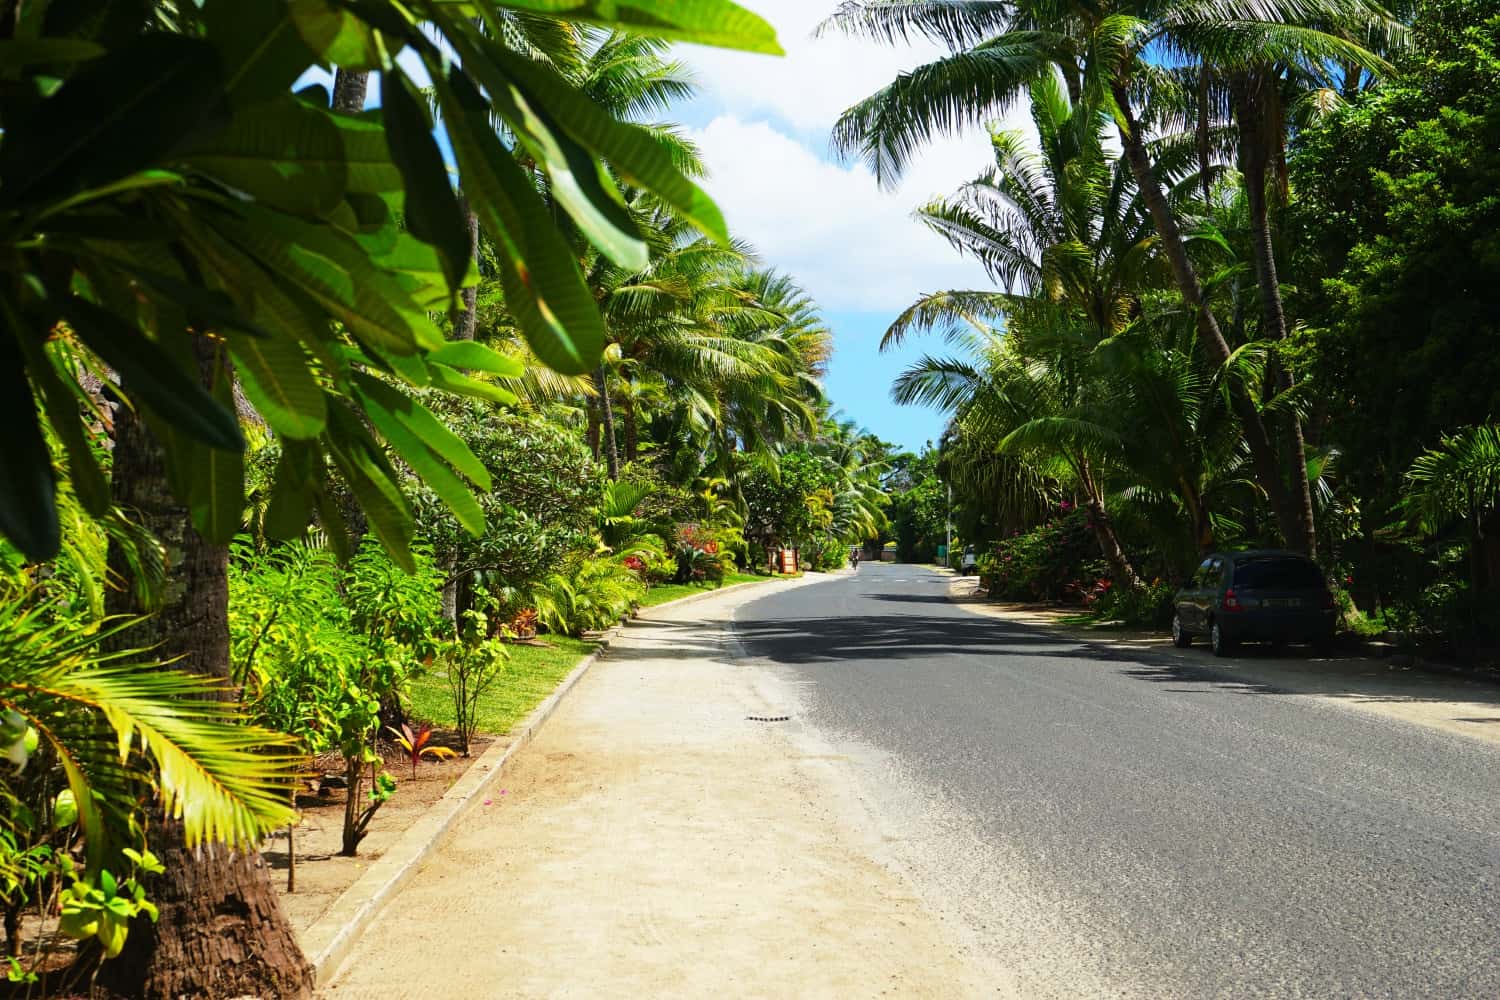 A jungly road in Bora Bora.